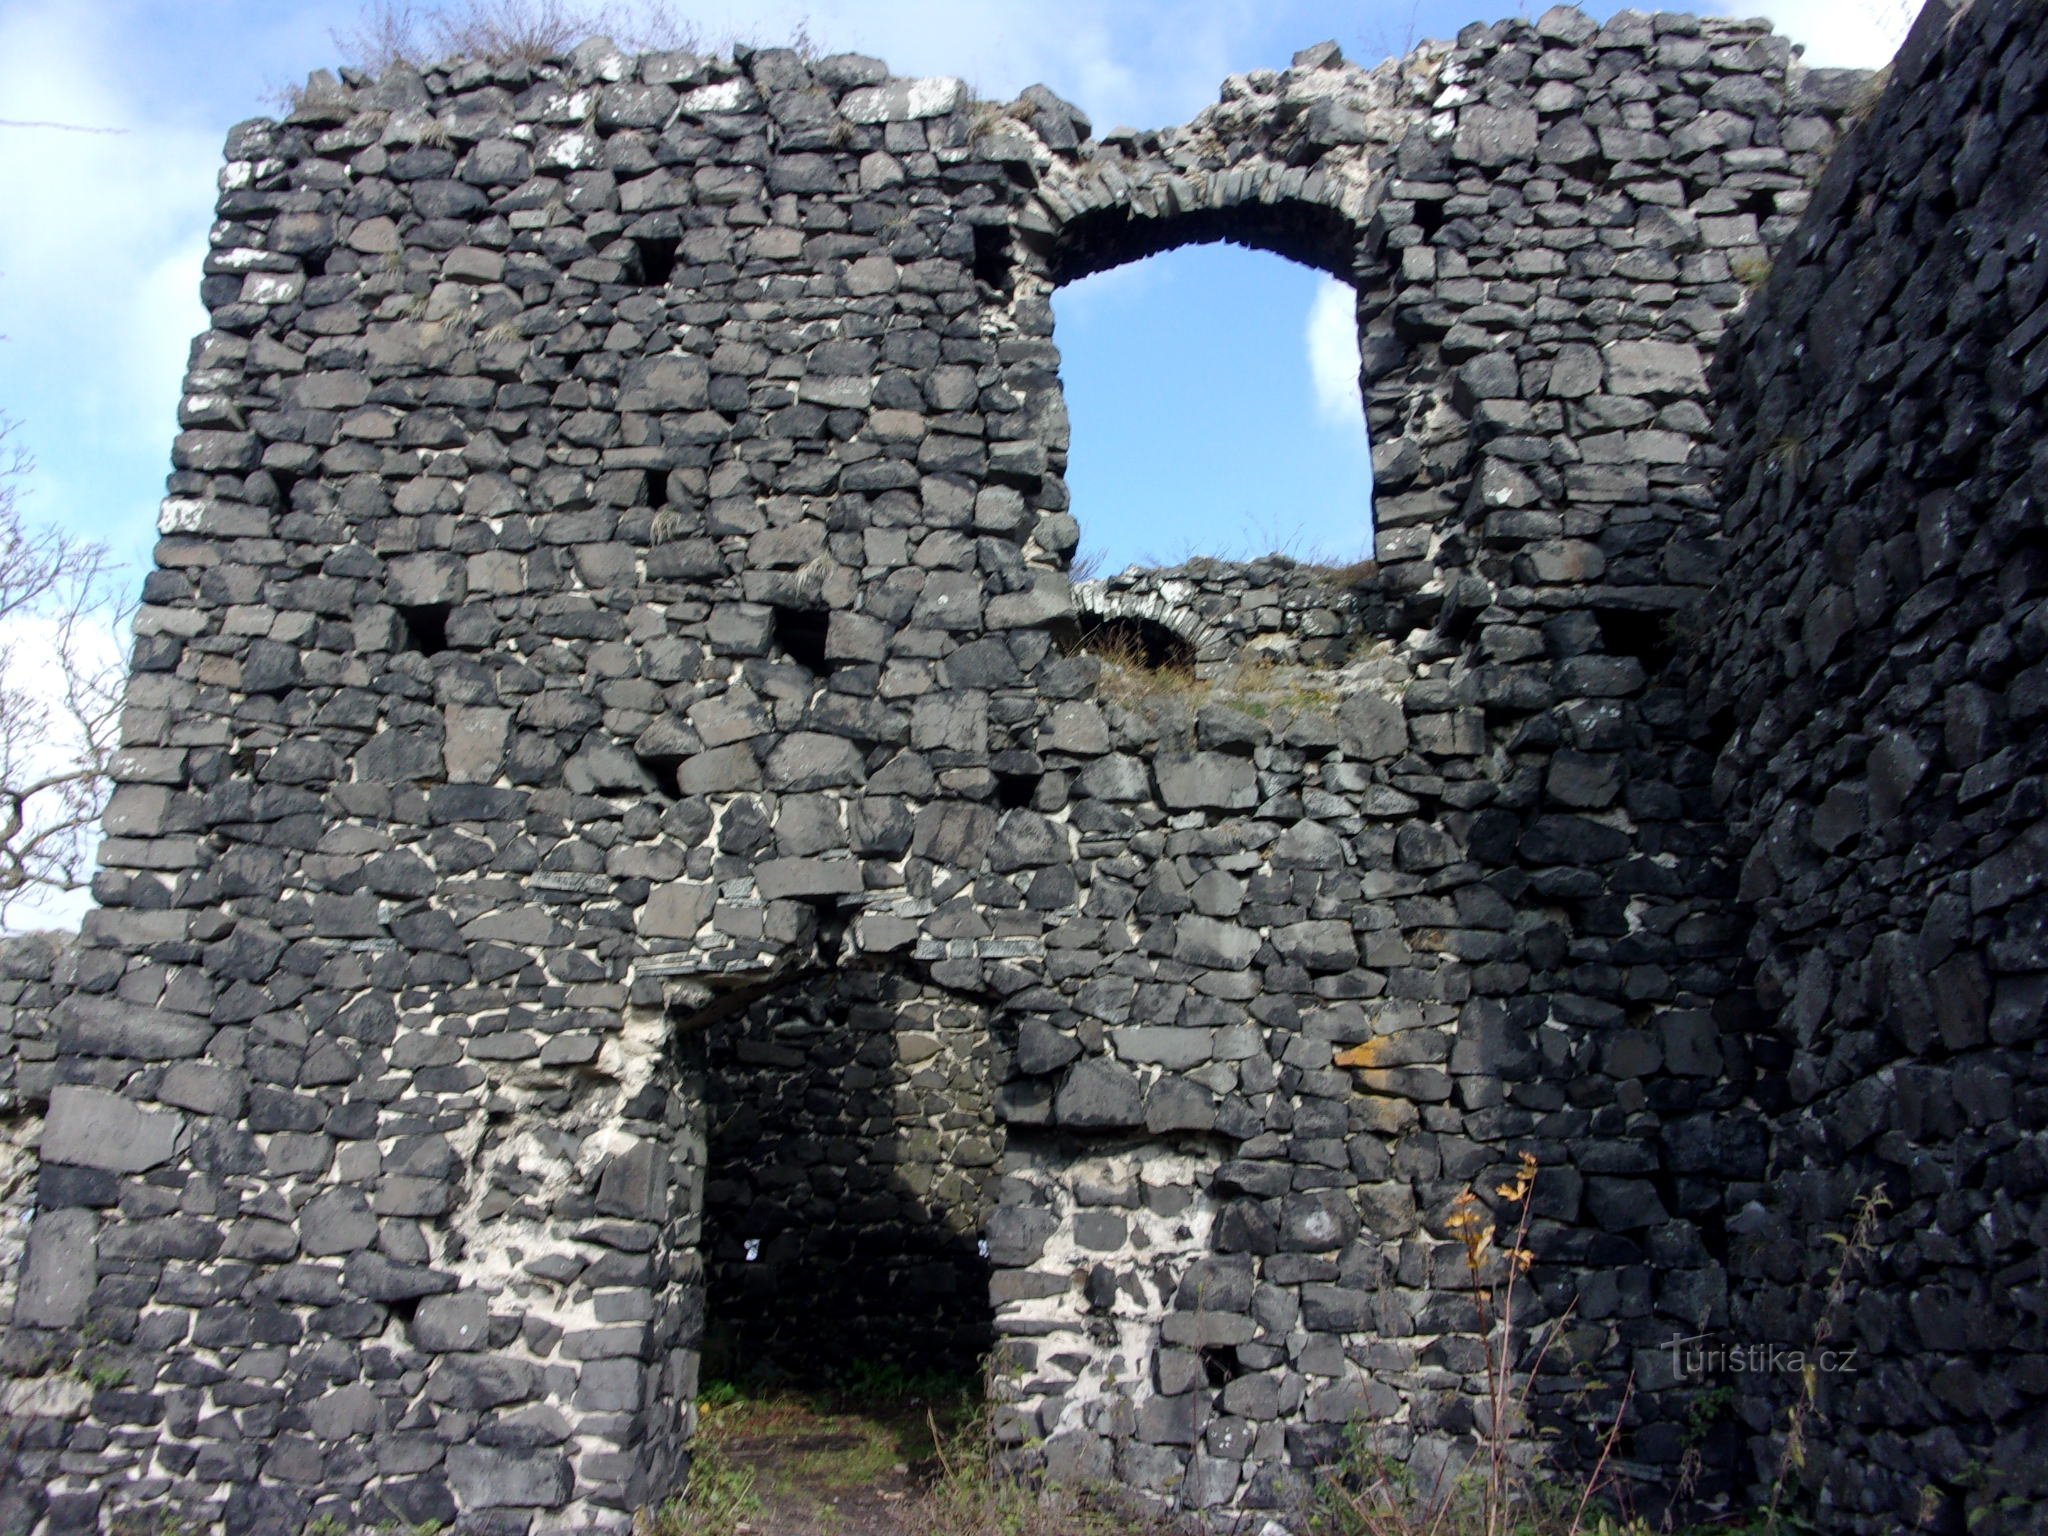 le rovine del castello di Ronov